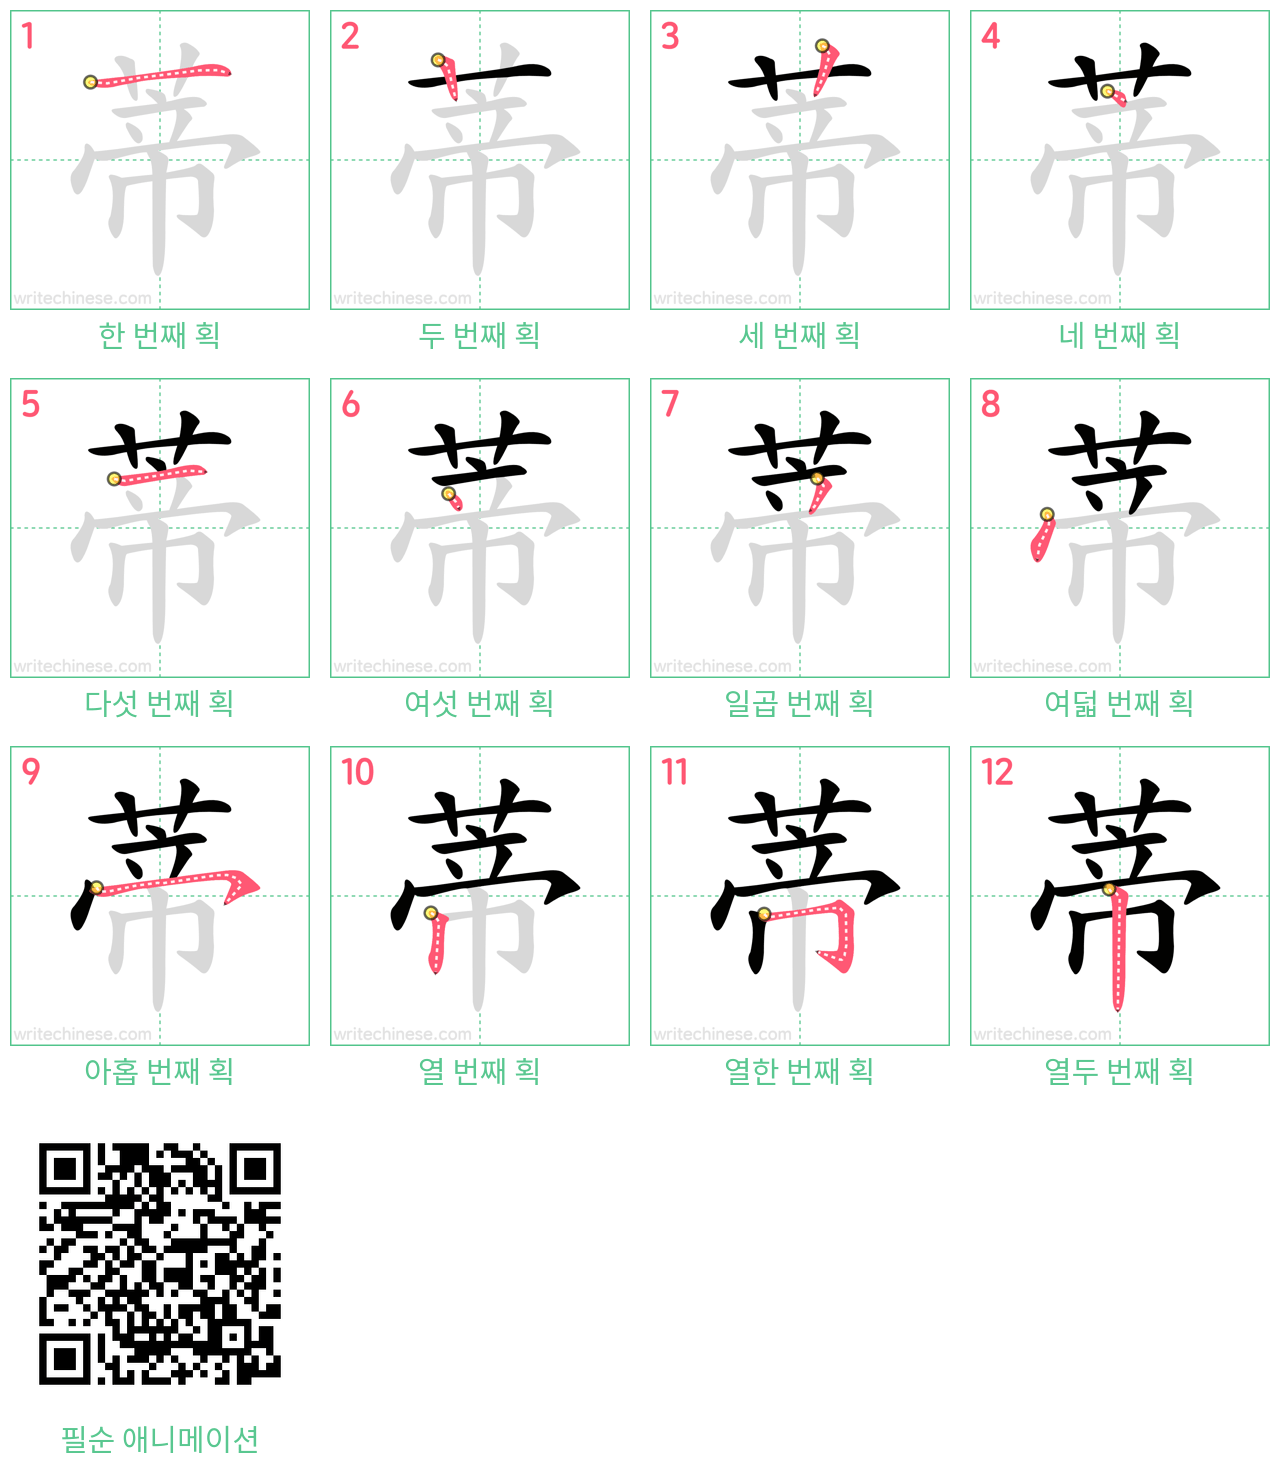 蒂 step-by-step stroke order diagrams